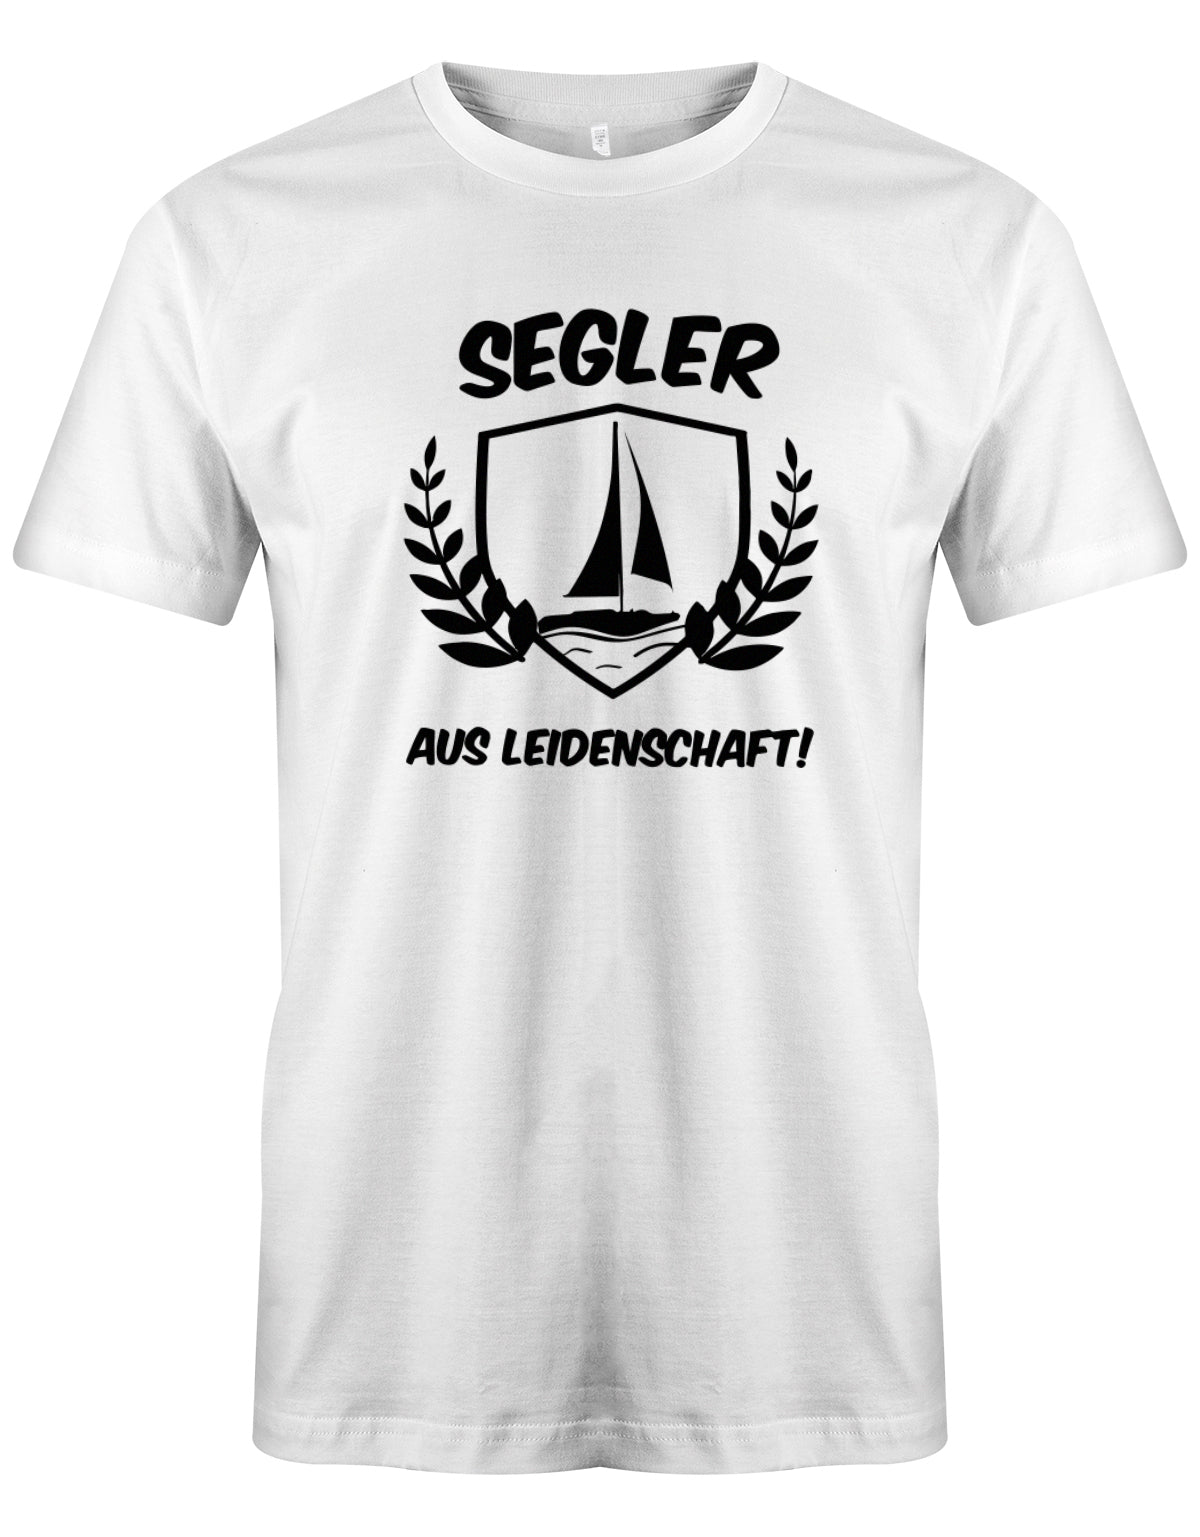 Das Segler t-shirt bedruckt mit "Segler aus Leidenschaft mit Segelboot" Weiss